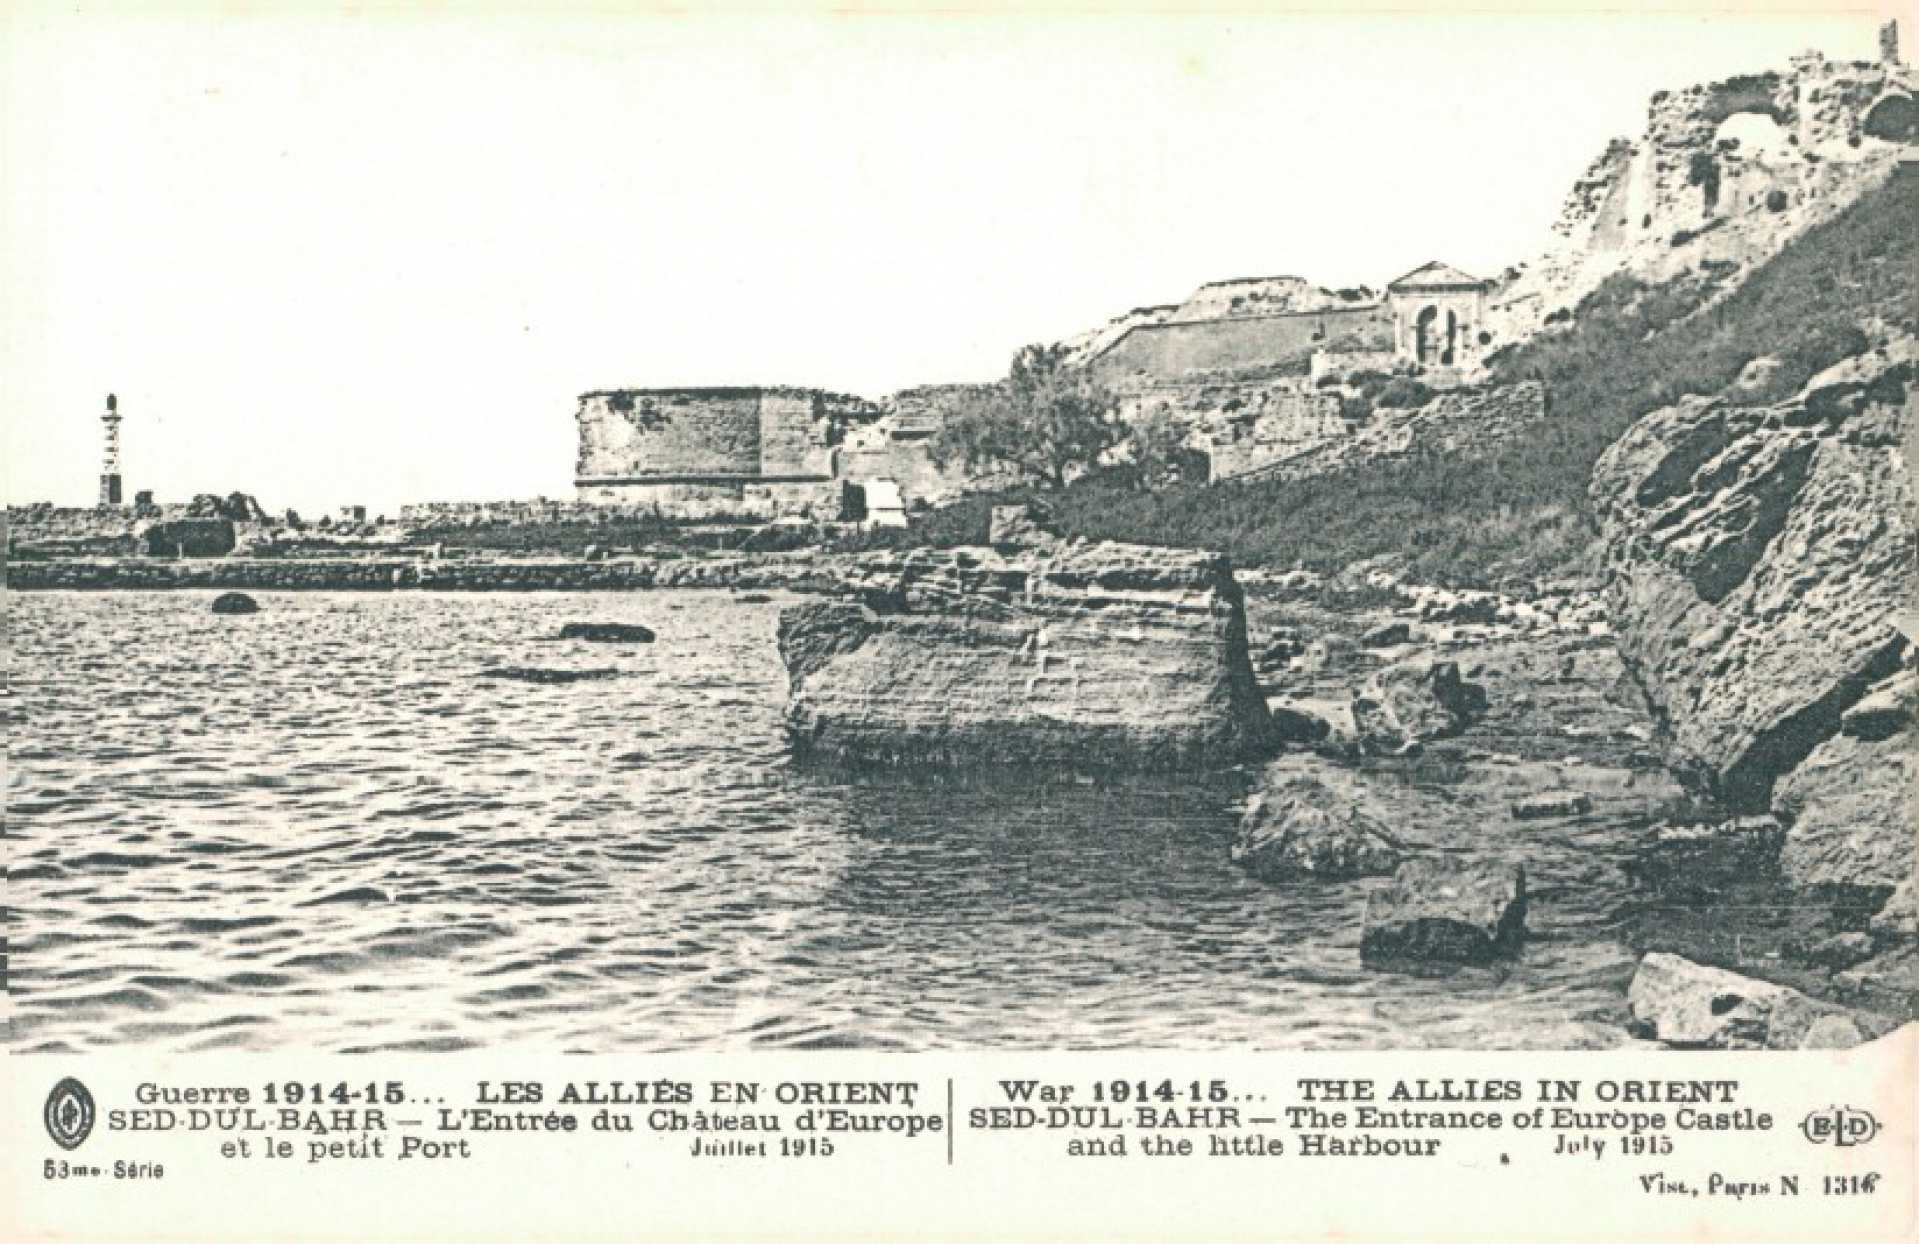 Guerre 1914-15… Les Allies en orient Sed-Dul-Bahr – L’Entree du Chateau d’Europe et le petit Port. Juillet 1915